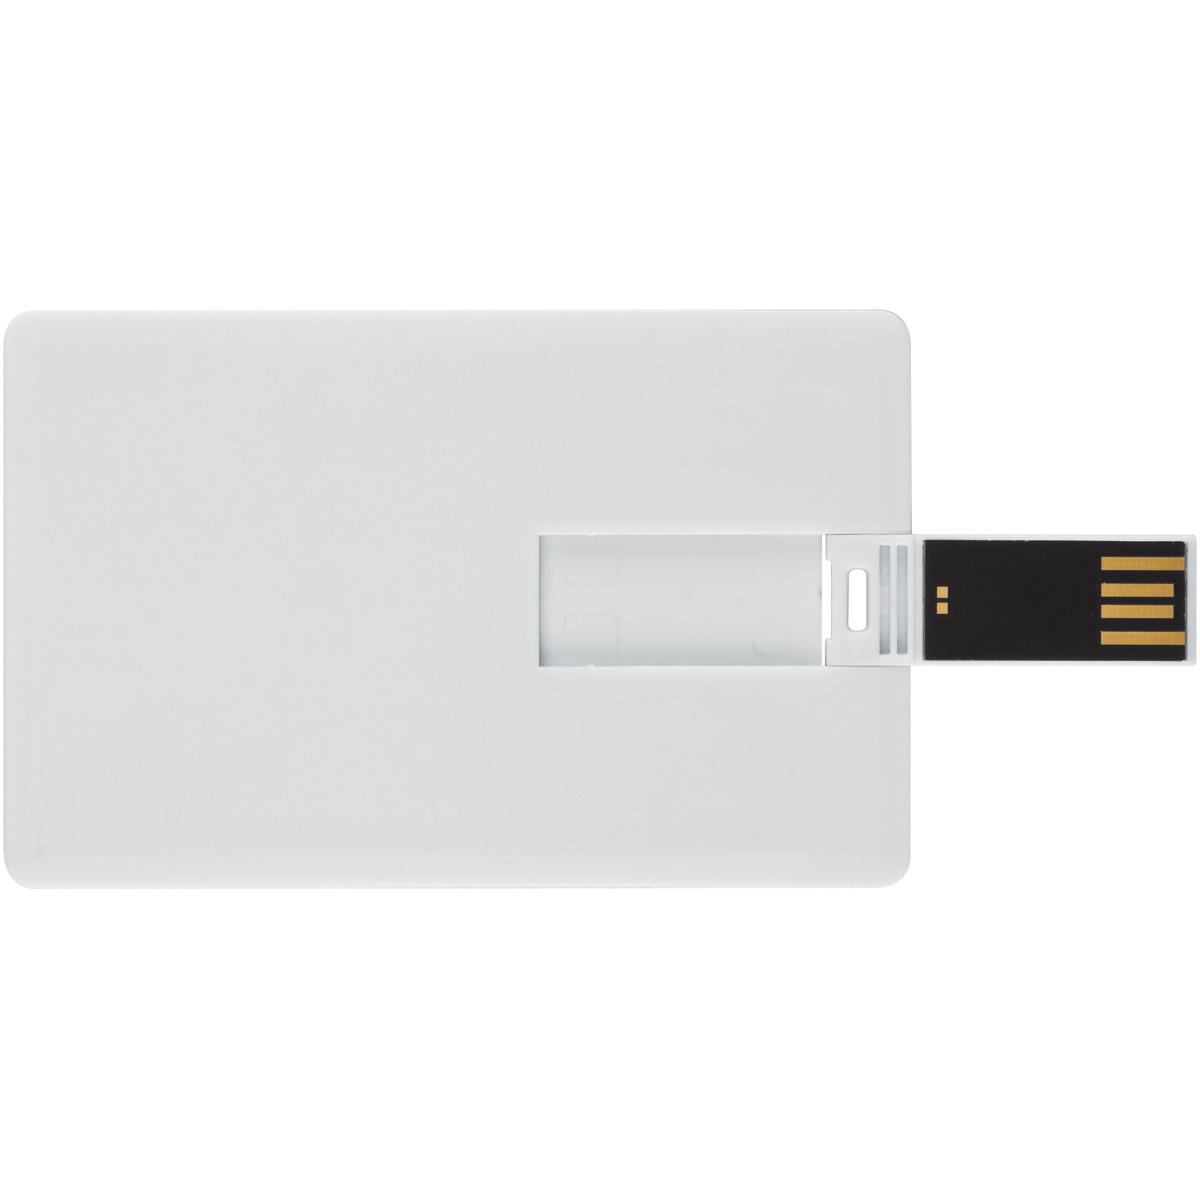 GB) 8 (Weiss, GERMANY USB USB-Stick ® Kreditkarte